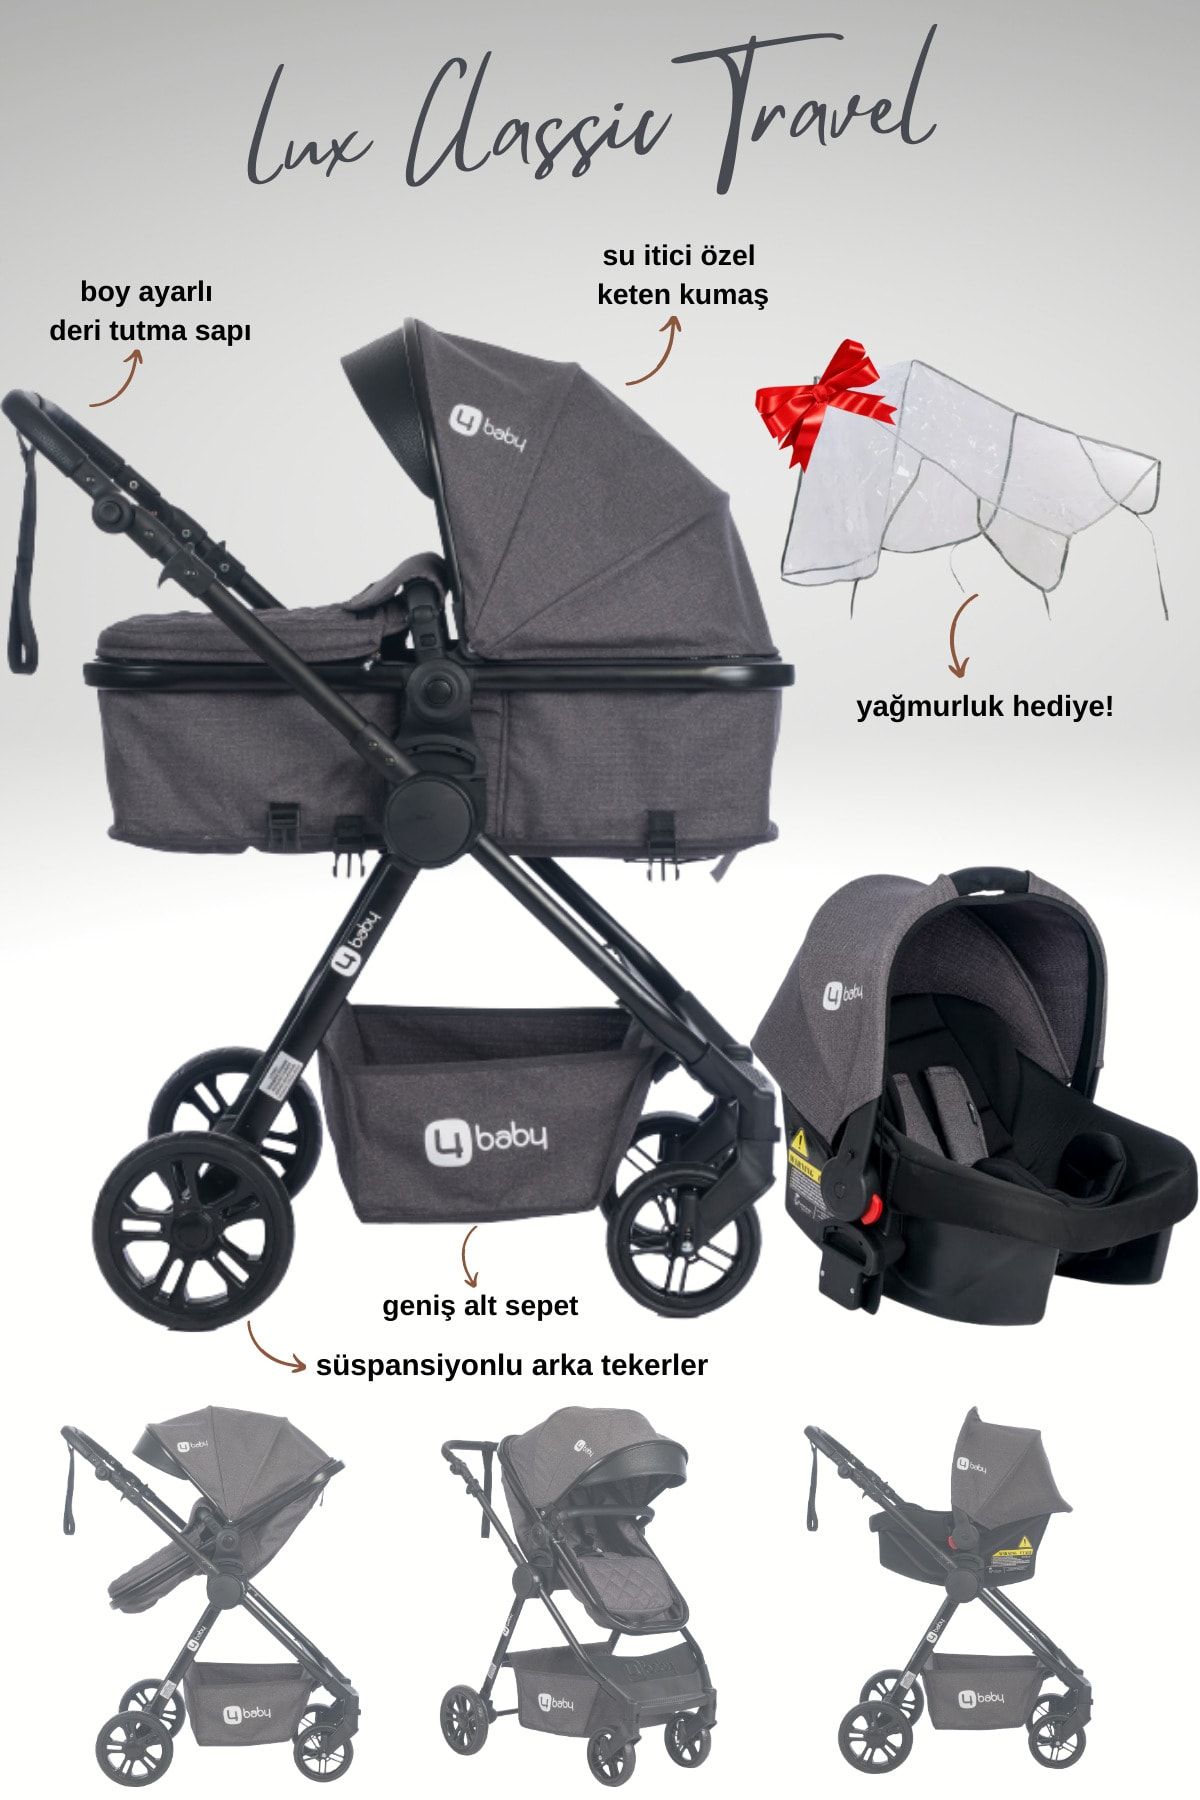 4 Baby Balans Lux Classıc Travel Sistem Bebek Arabası